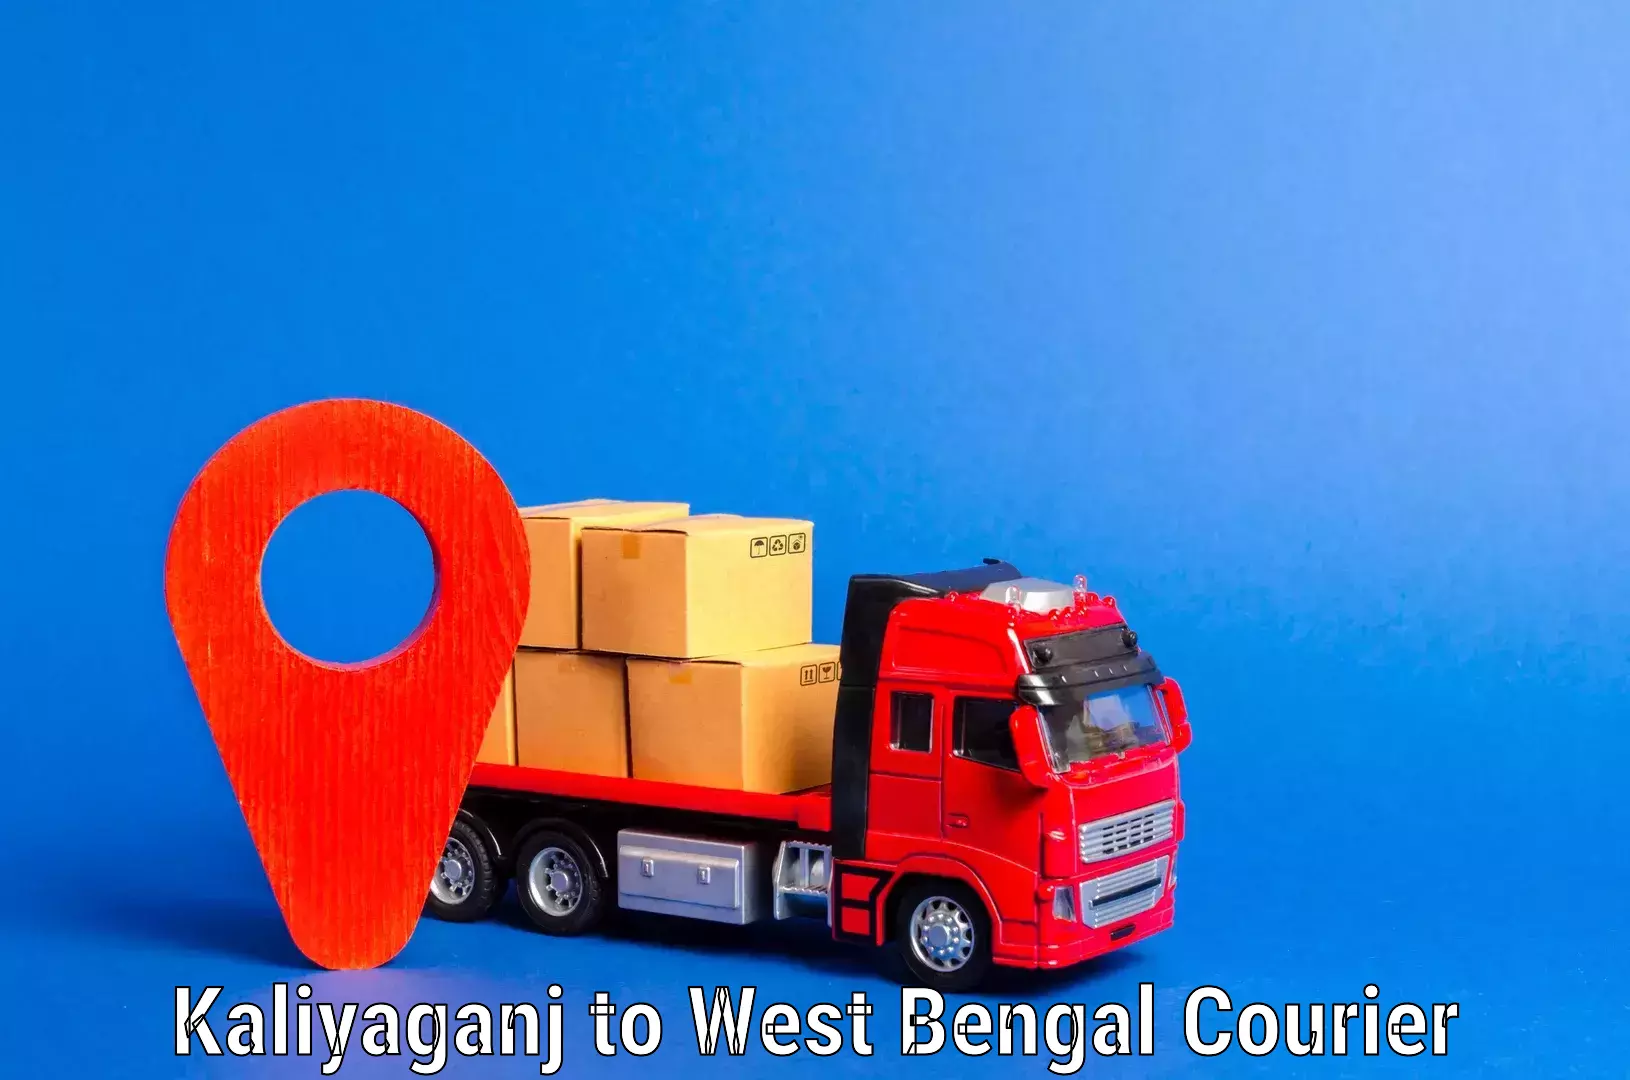 Furniture moving service Kaliyaganj to West Bengal